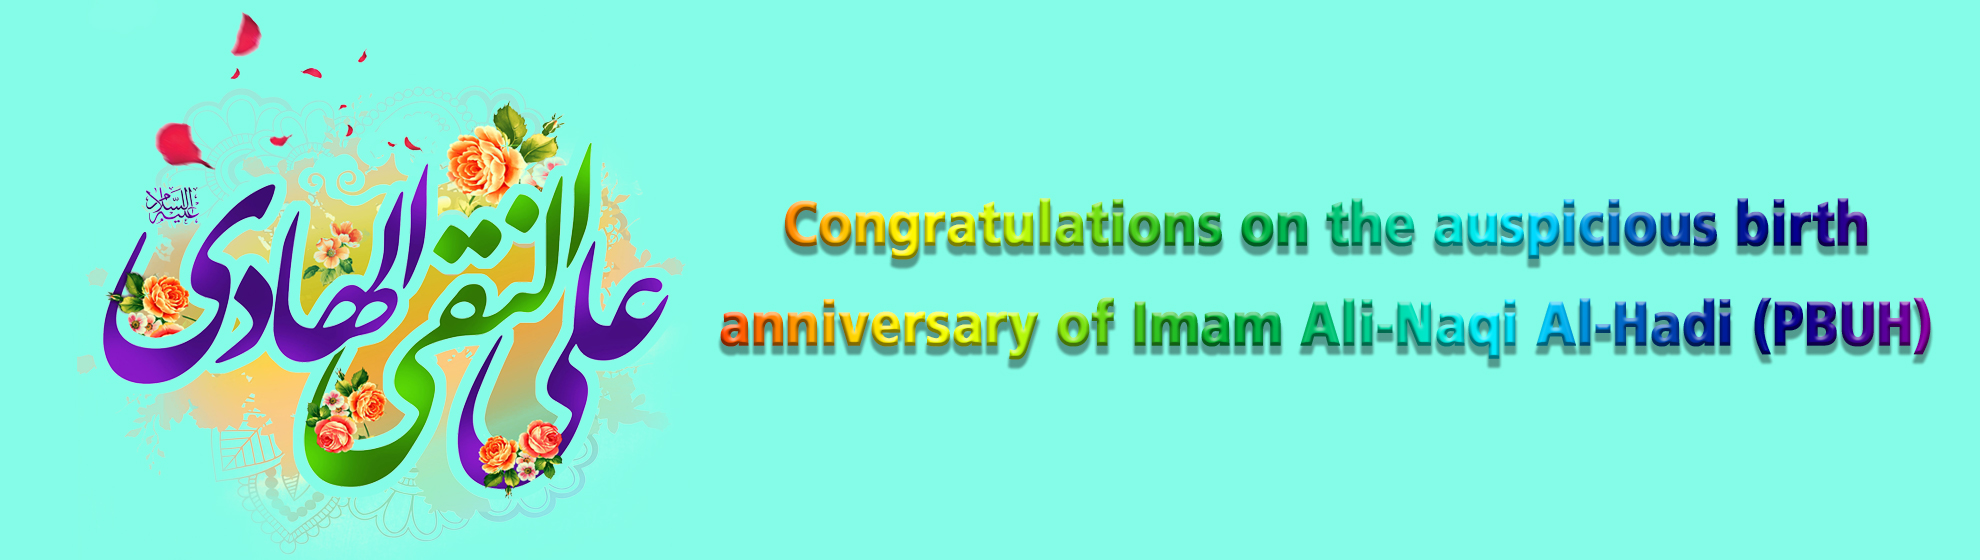 Congratulations on the auspicious birth anniversary of Imam Ali-Naqi Al-Hadi (PBUH)